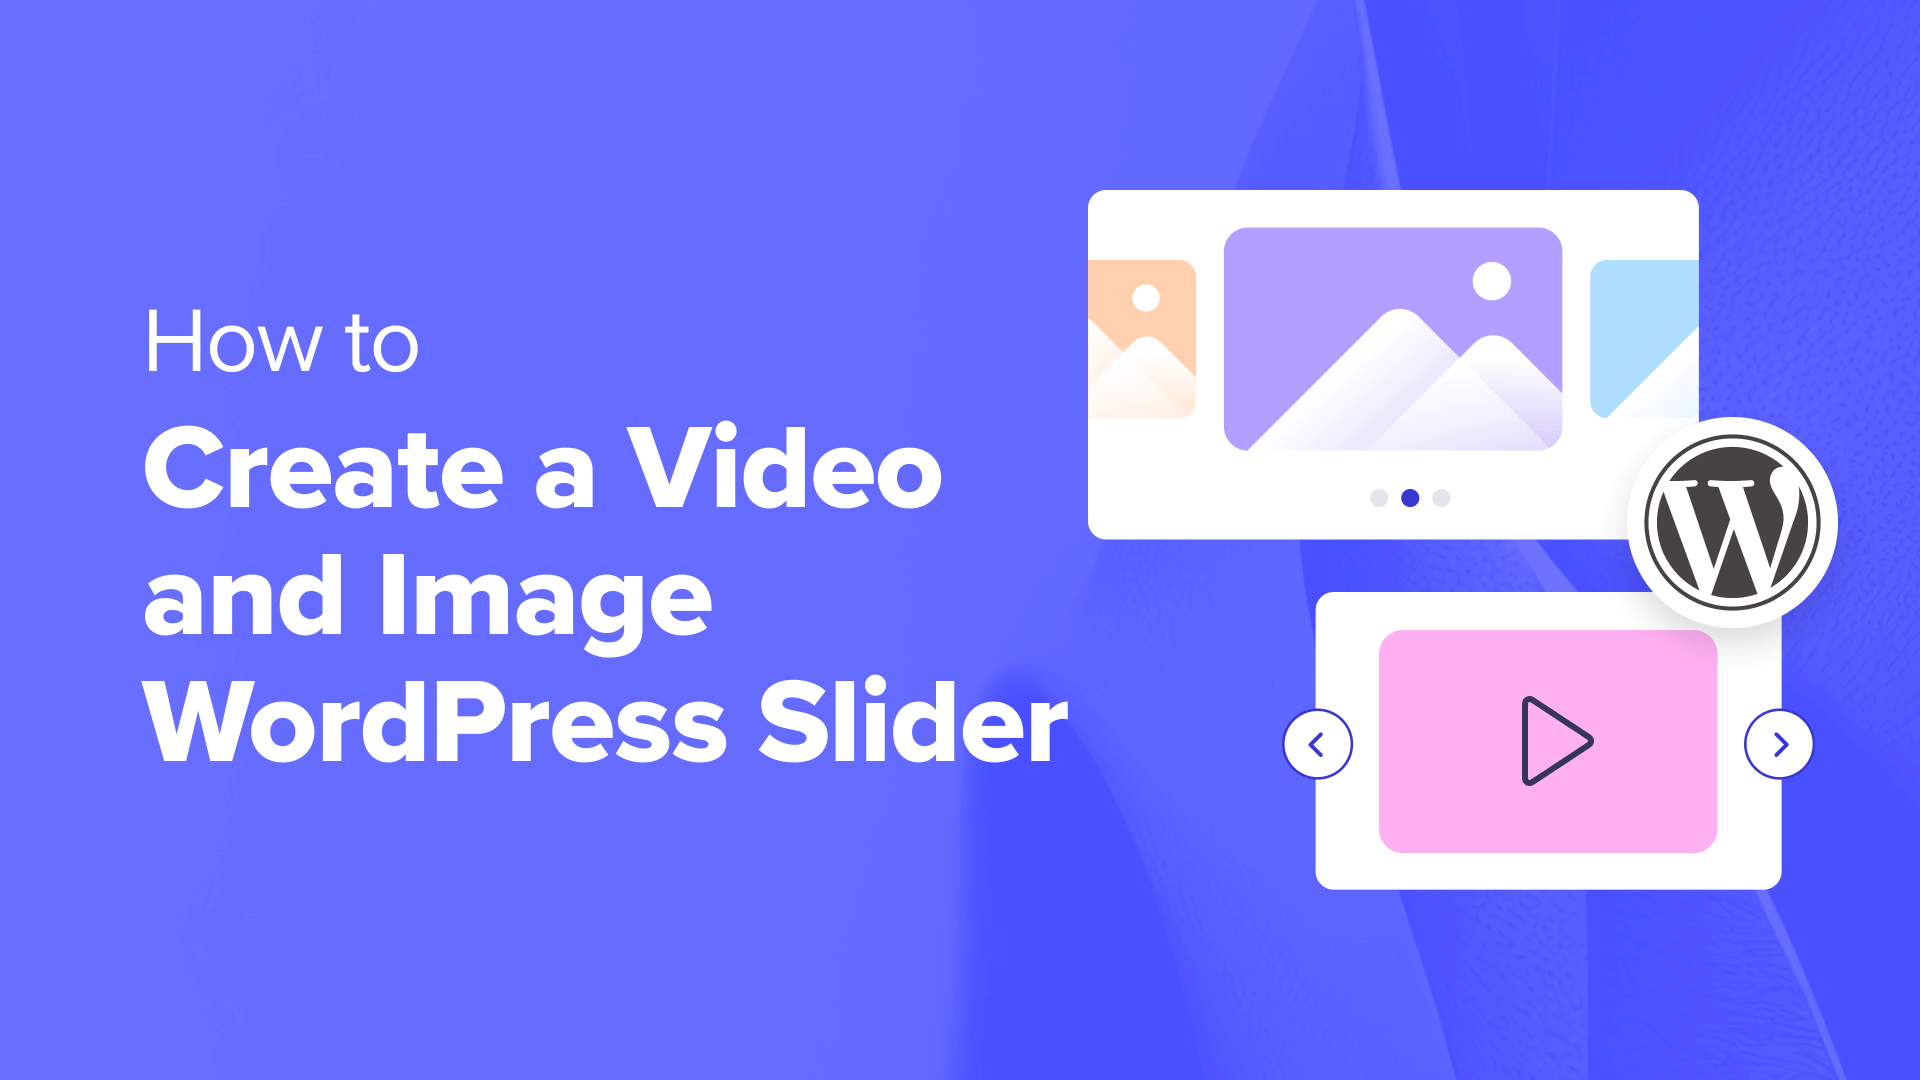 Come creare uno slider WordPress per video e immagini (il modo più semplice)